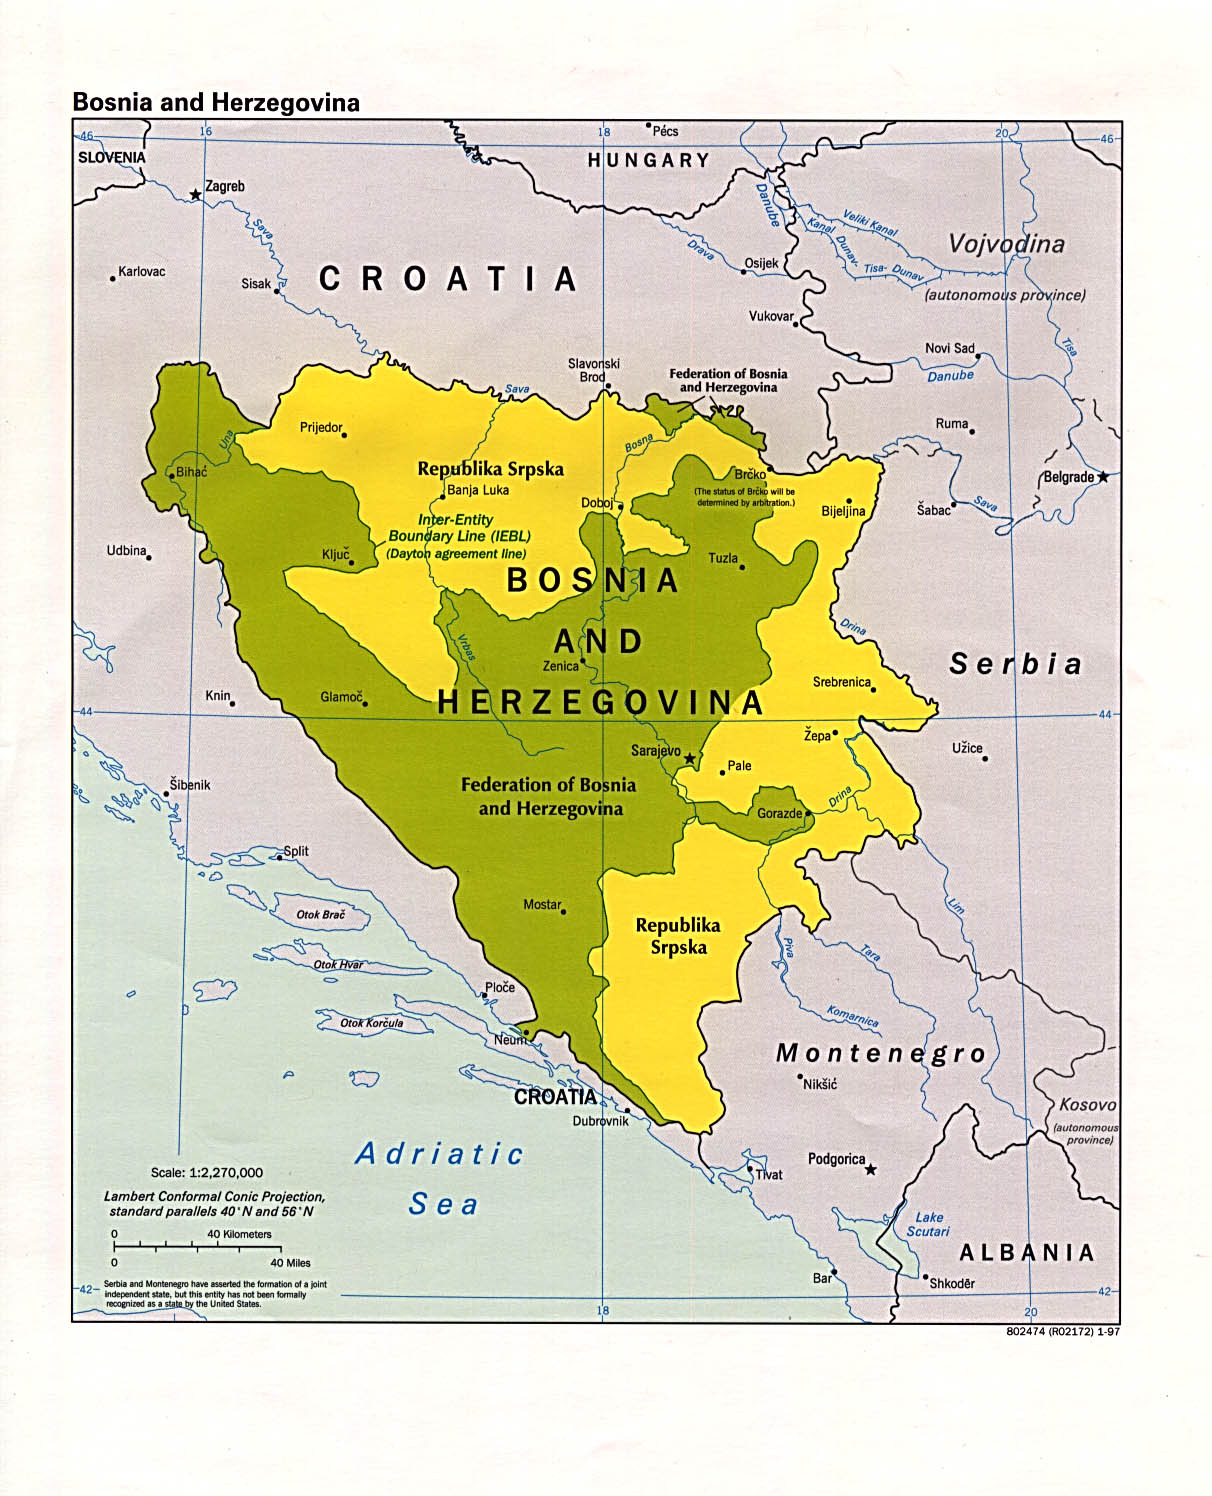 Indonesia Economical: Economy of Bosnia and Herzegovina